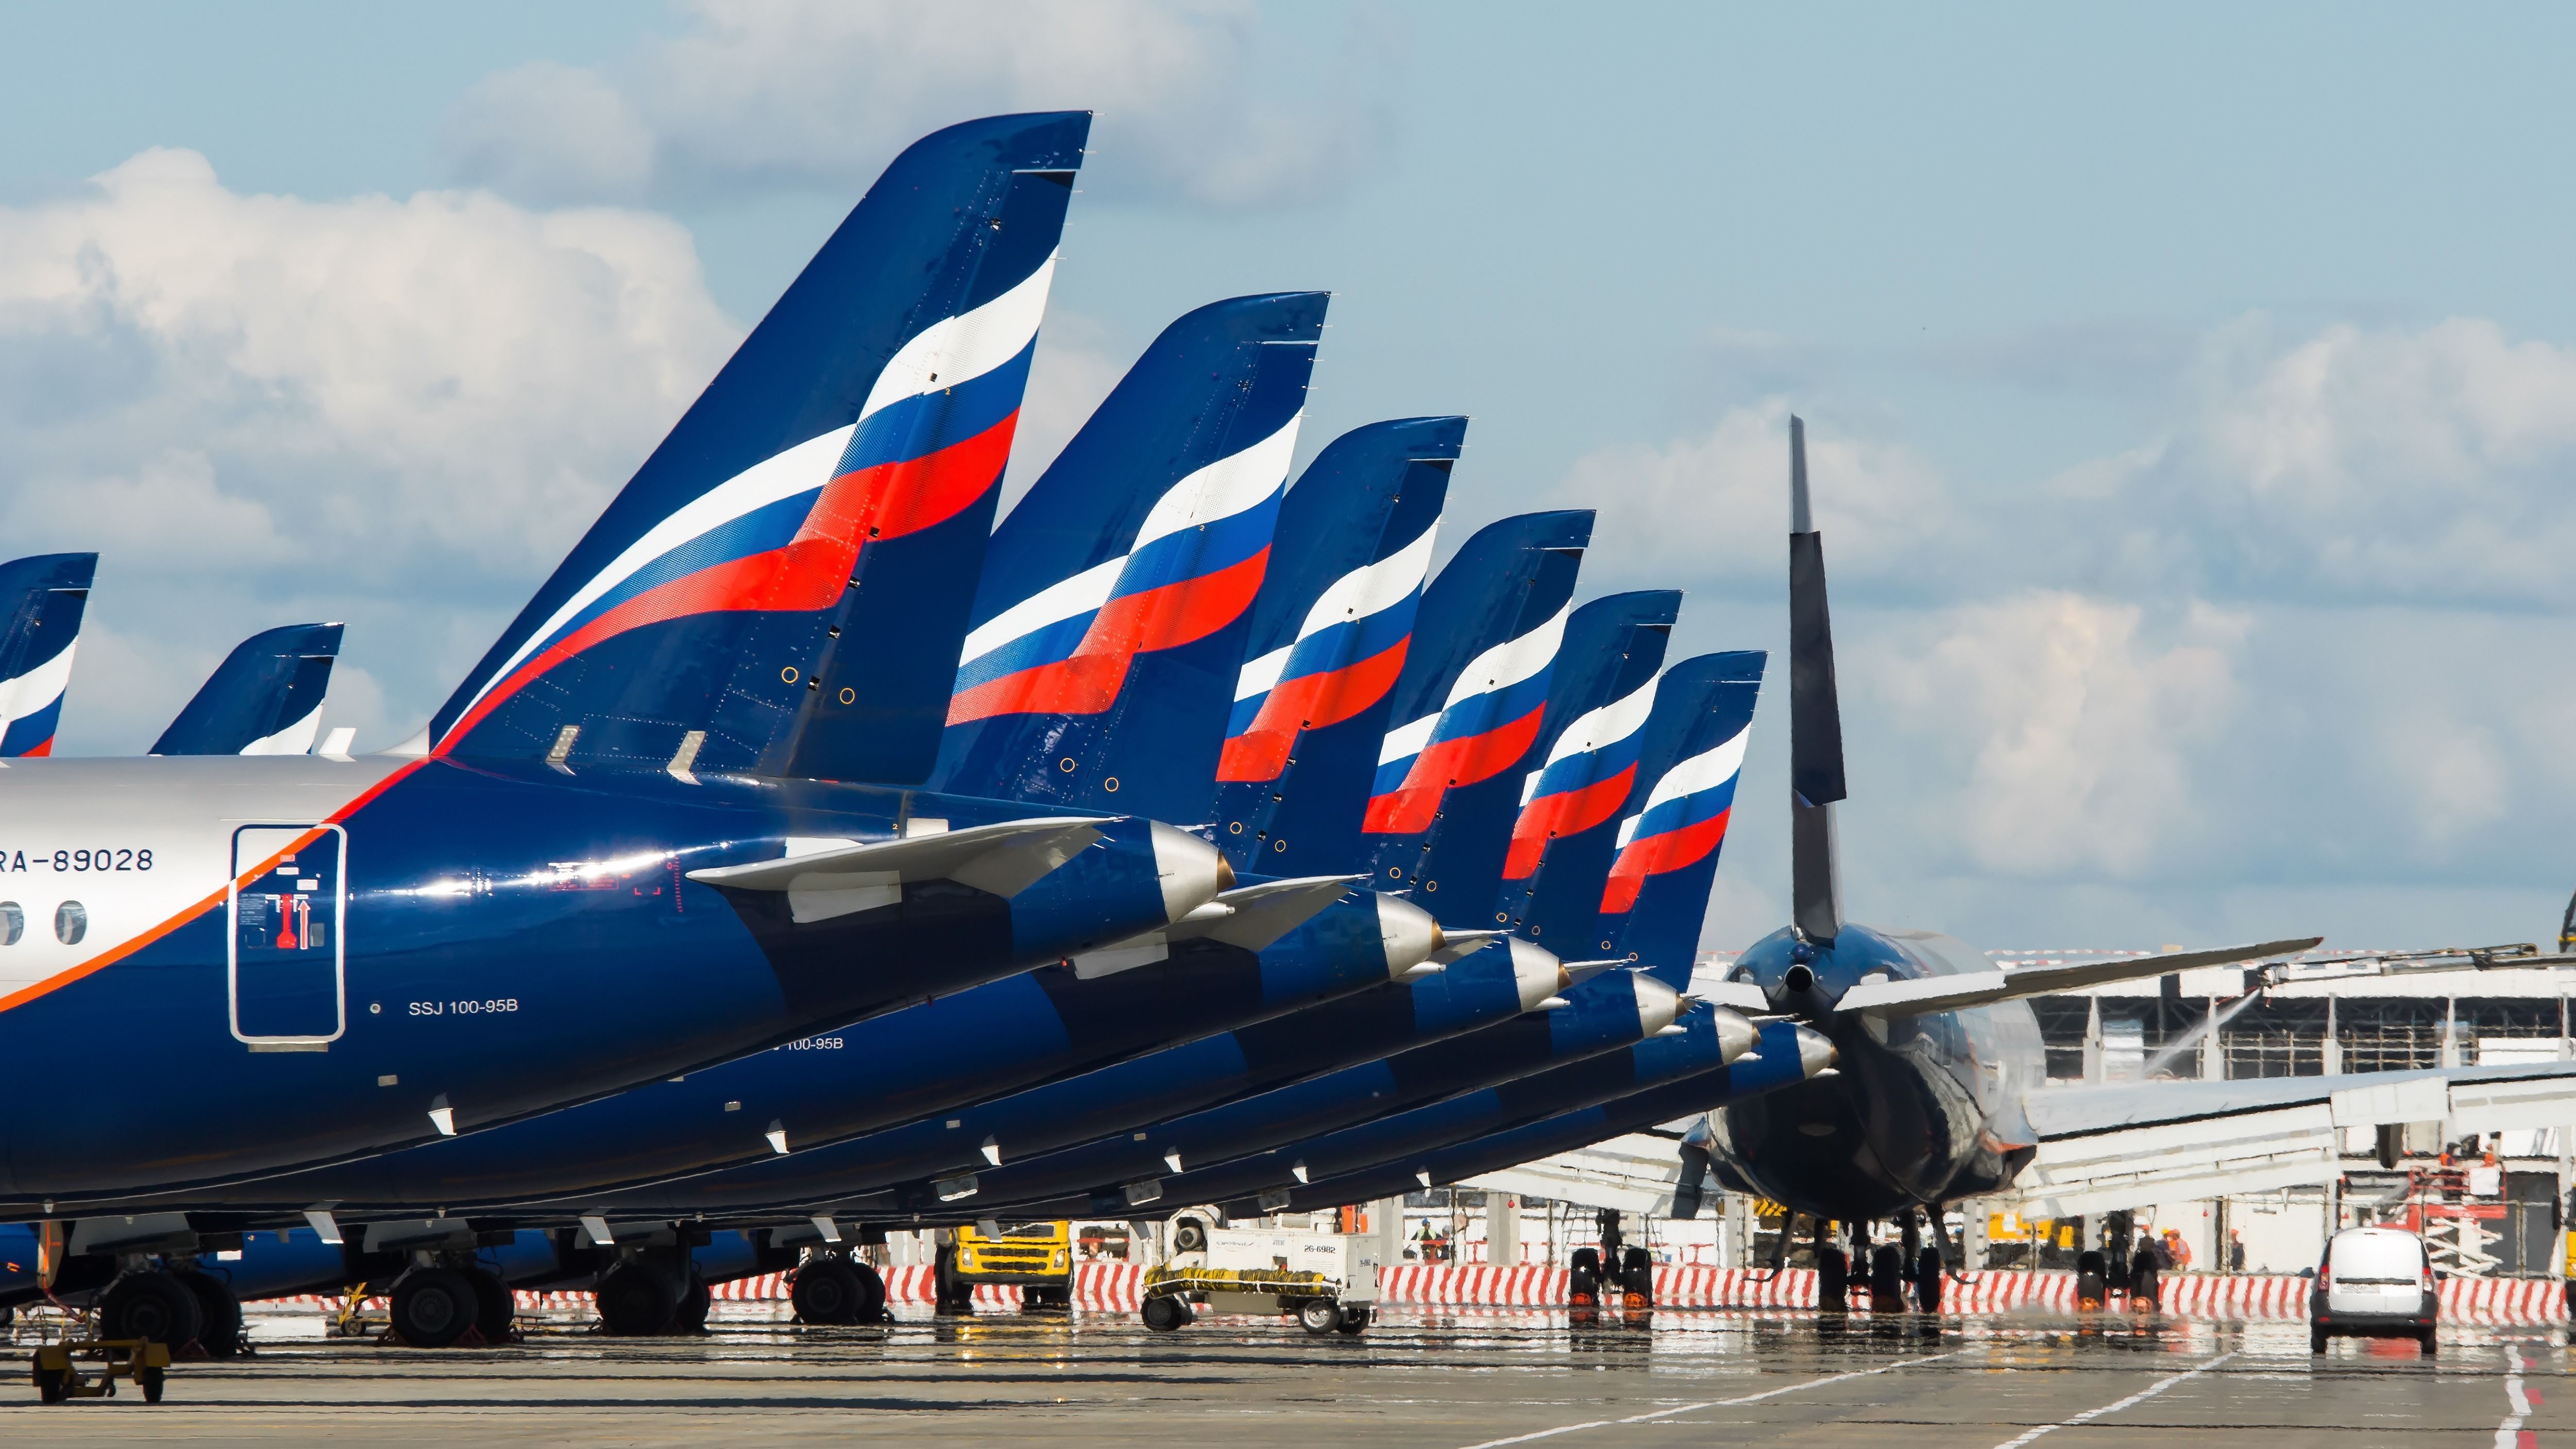 A fleet of Russia's Aeroflot aircraft parked at an airport